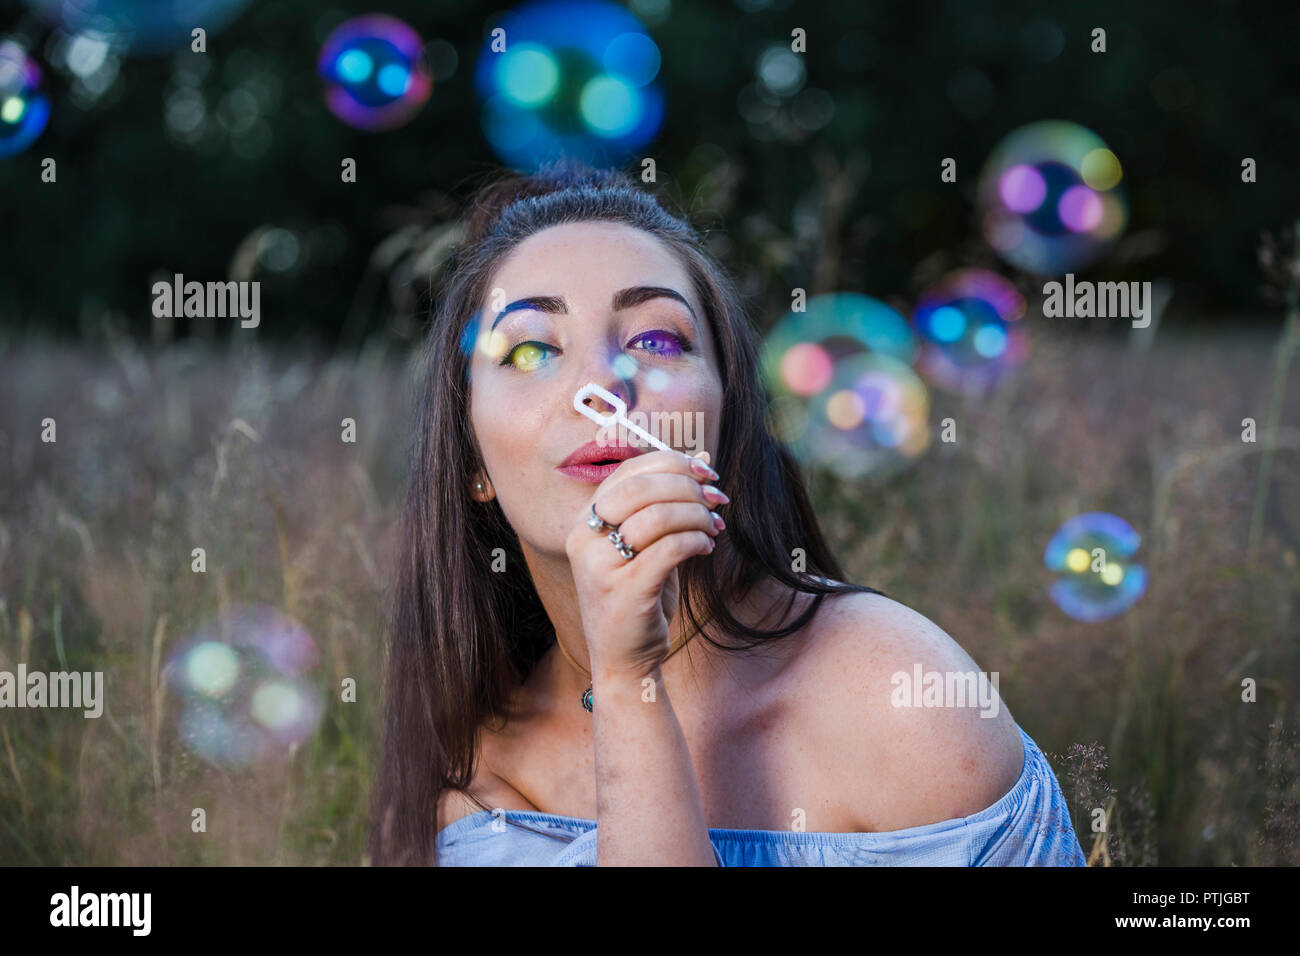 Una mujer joven sopla burbujas hacia la cámara en un prado. Foto de stock